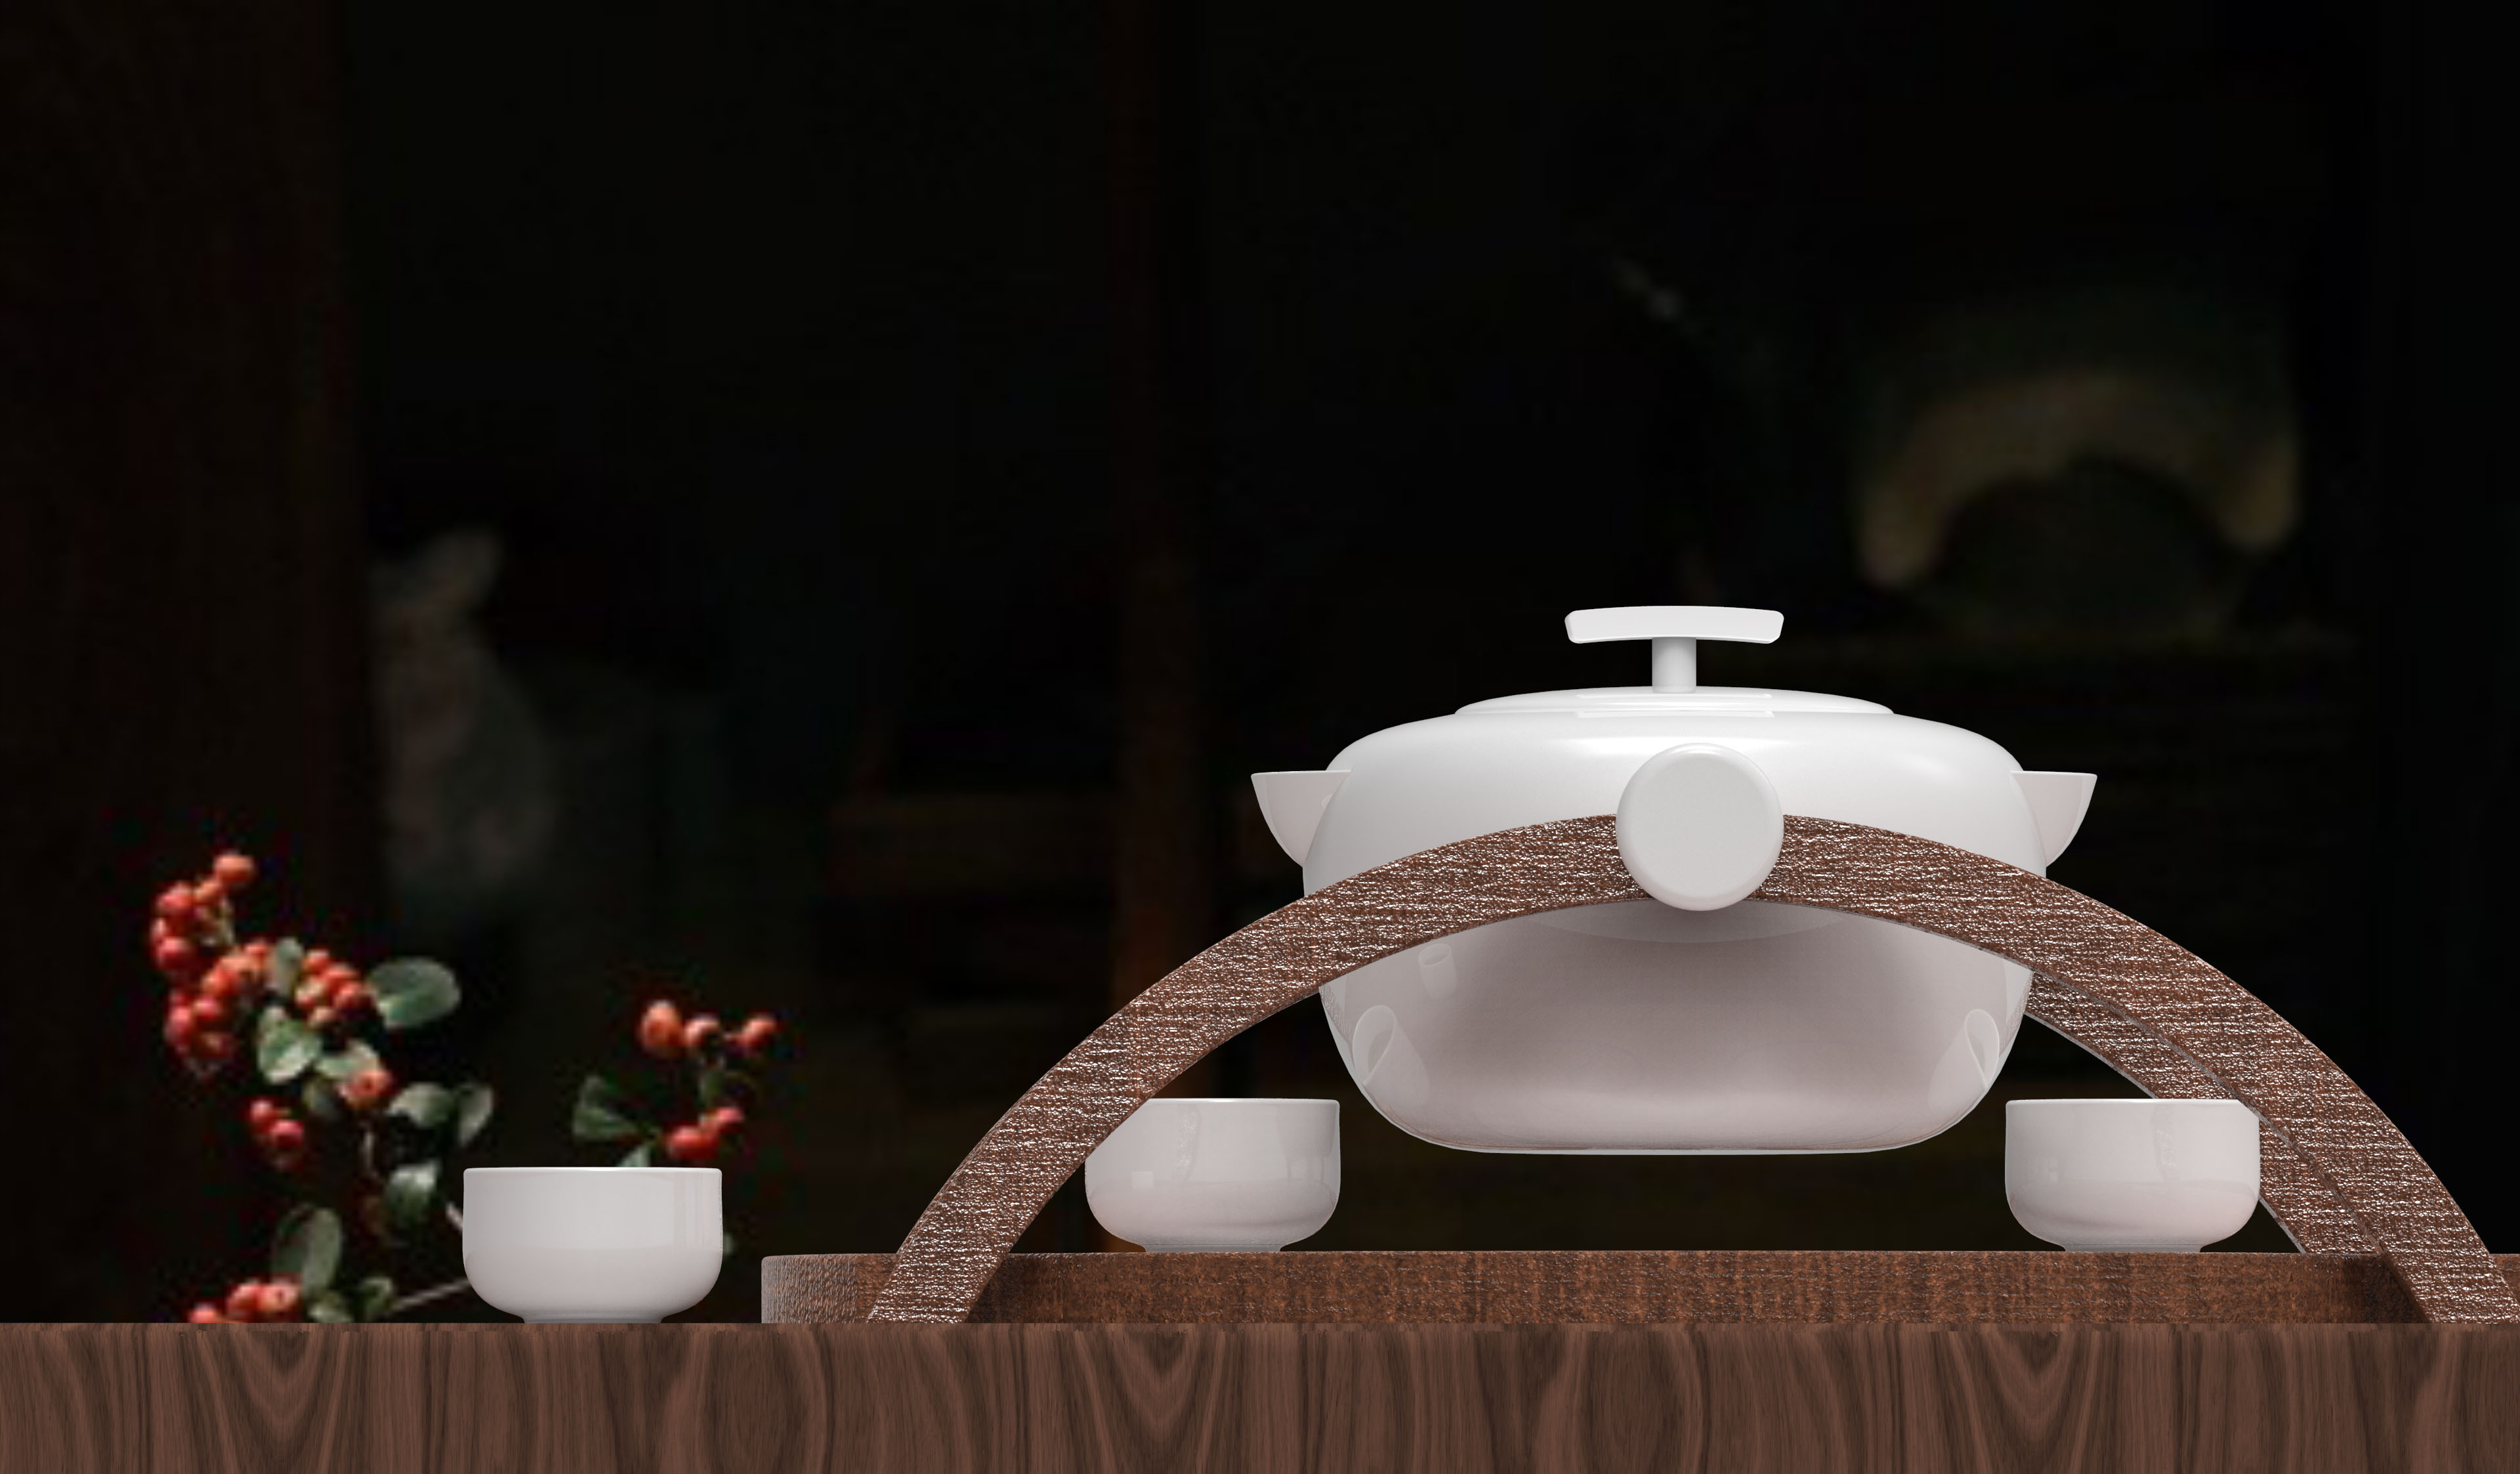        依據齊魯文化設計的一款茶具，通過手搖倒茶的方式增加人們飲茶的趣味性，茶盤上“一山一水一圣人”的鏤刻也使茶具更具有文化內涵。